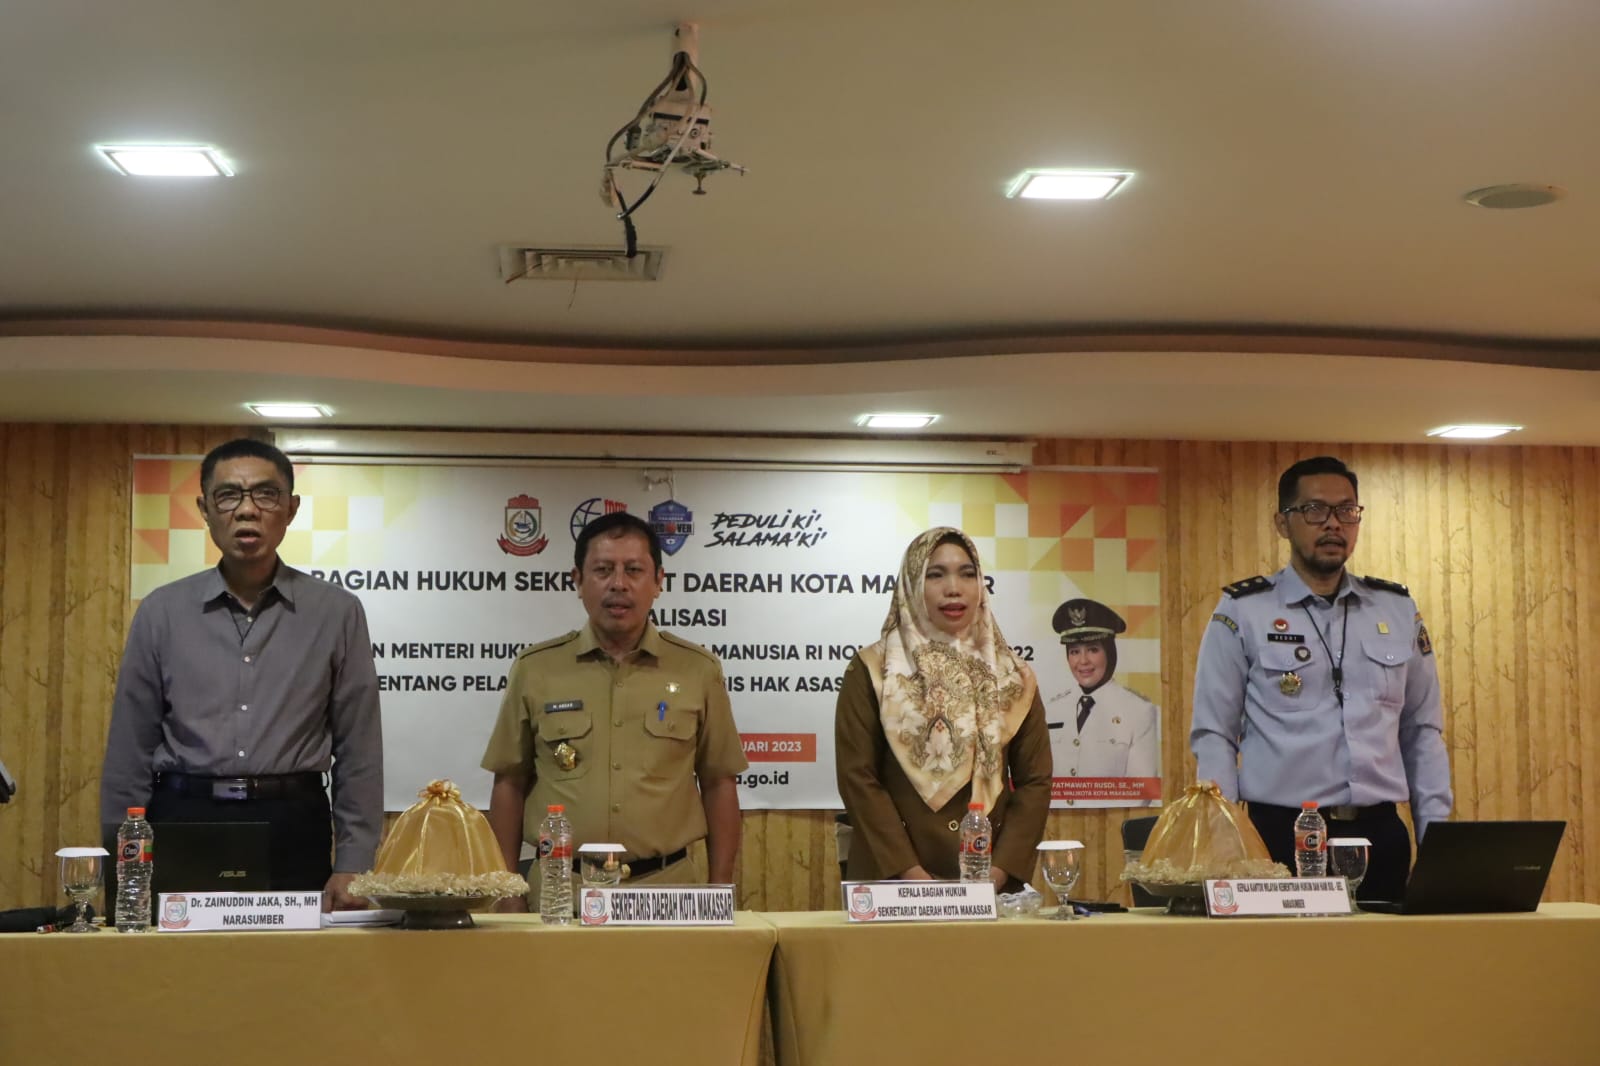 Pemkot Makassar Gelar Sosialisasi Peraturan Menteri Hukum dan HAM tentang Pelayanan Publik